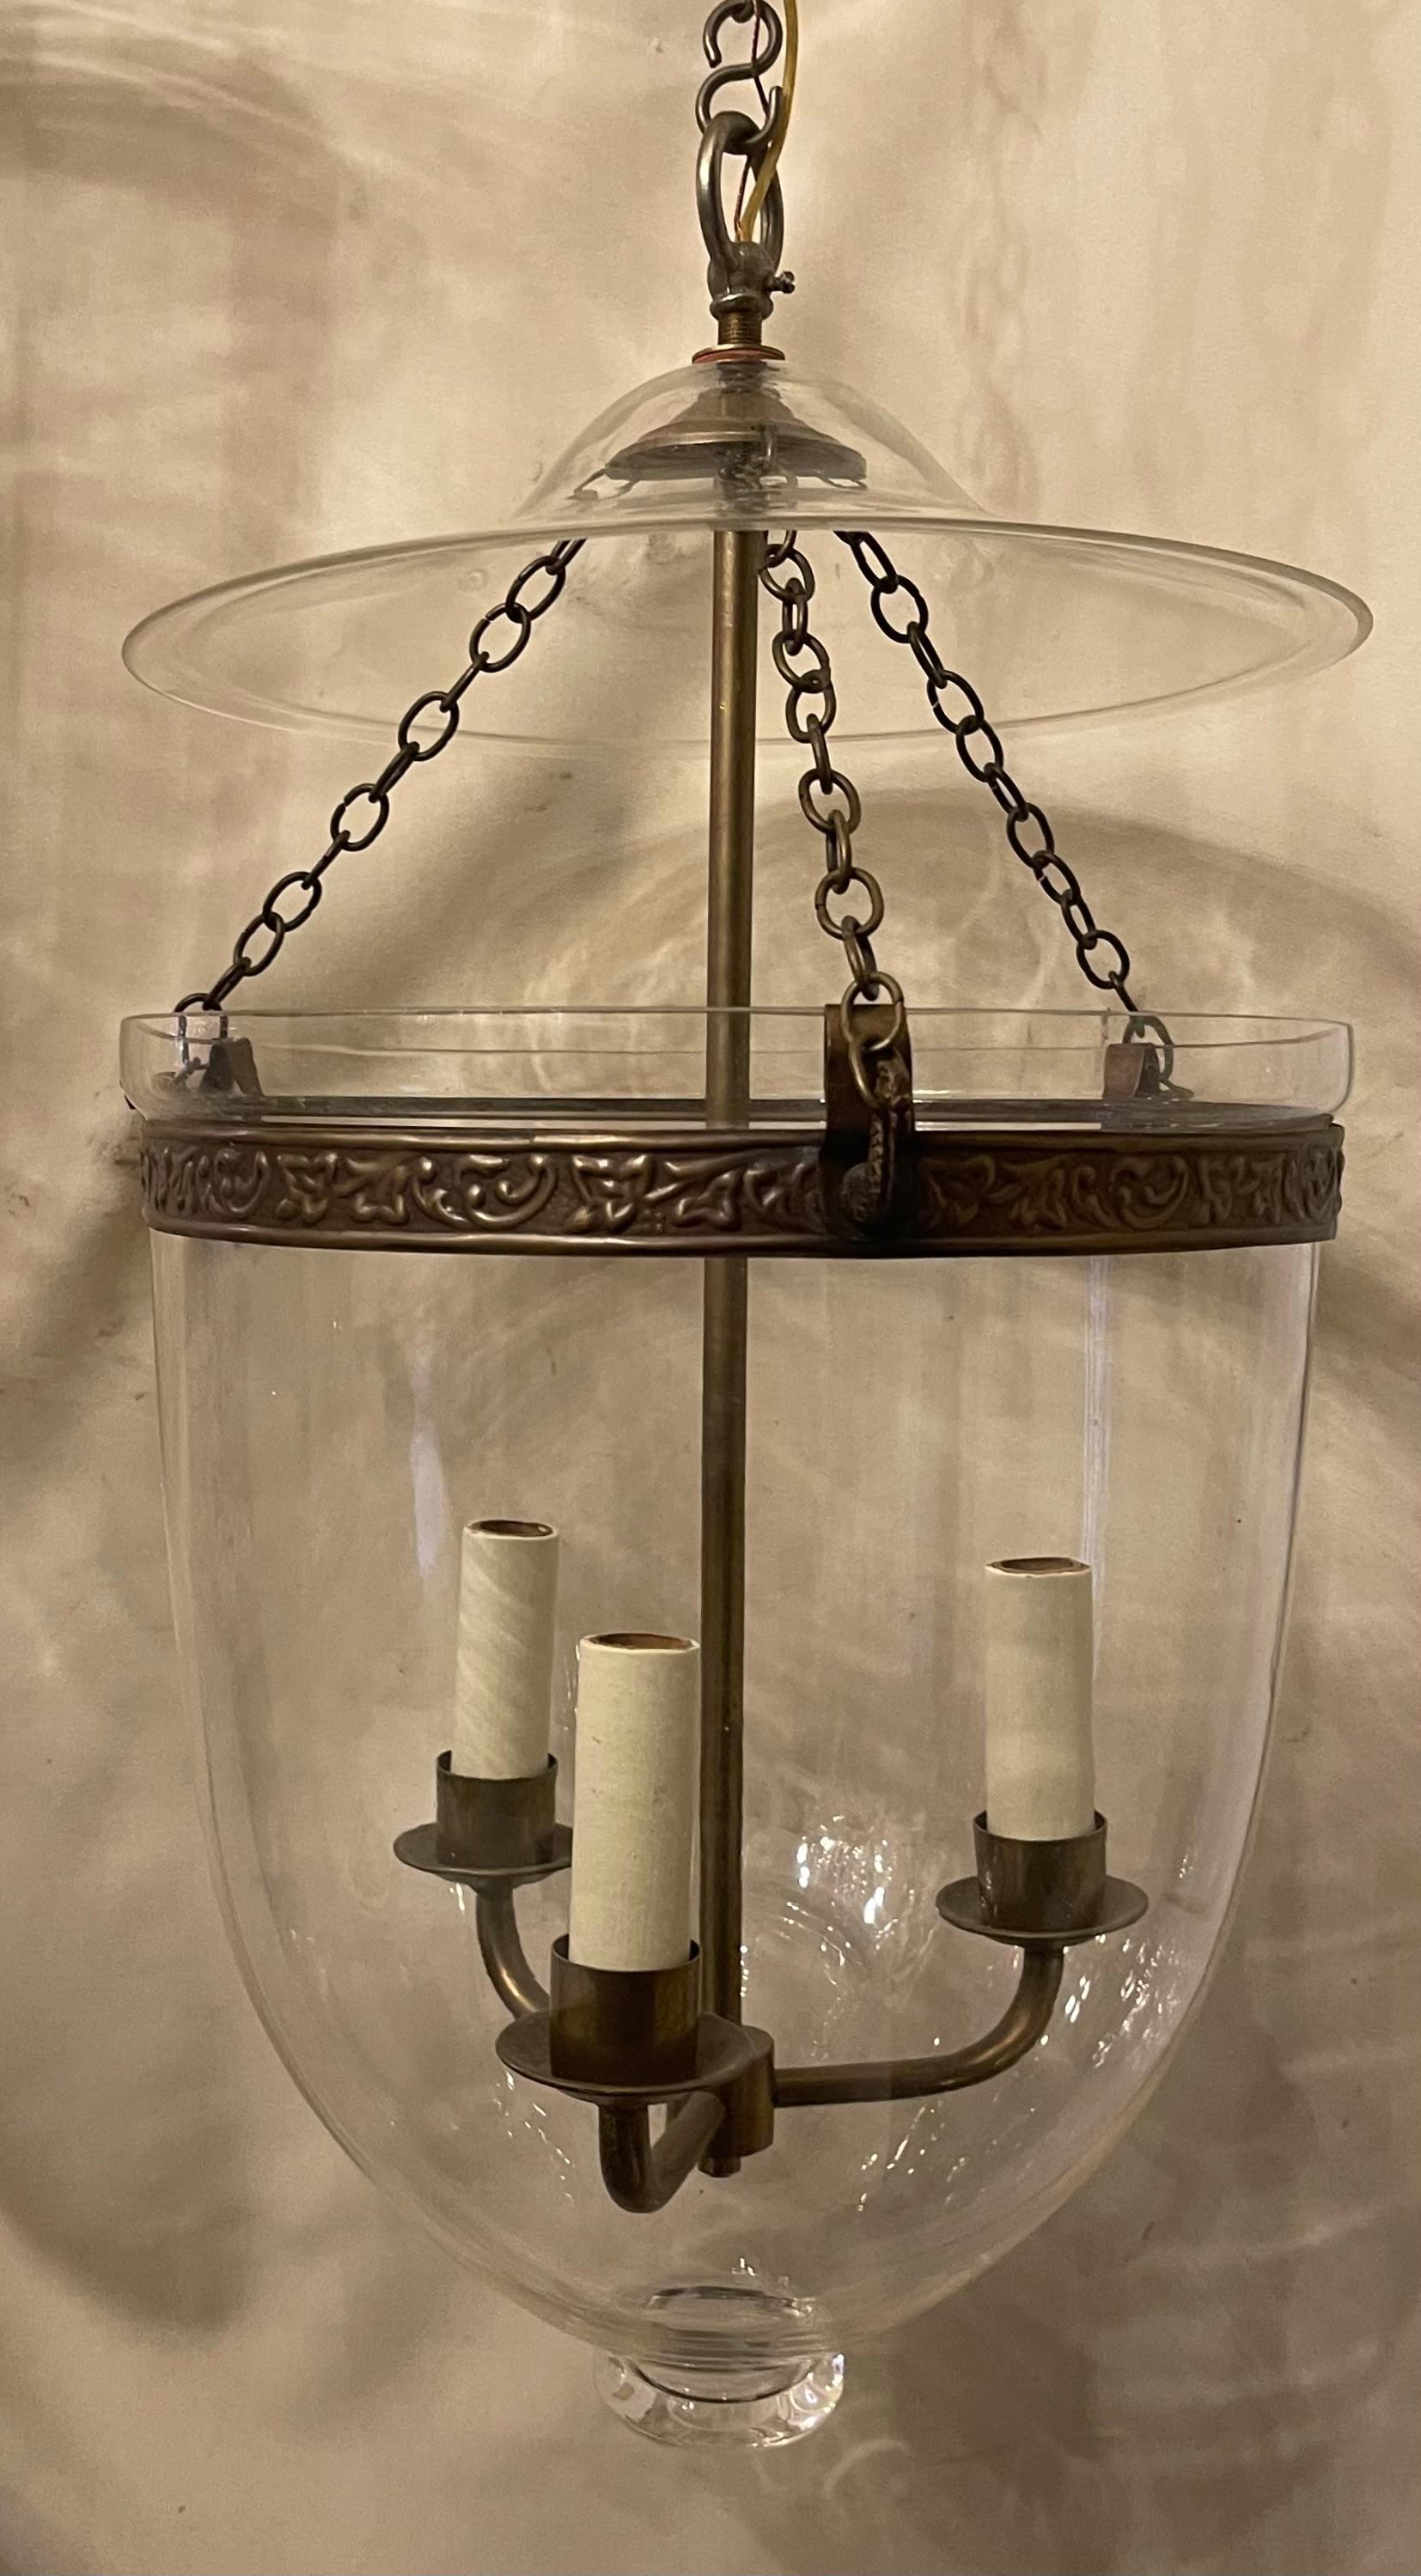 Paire de lanternes en verre soufflé de style Régence anglaise, en laiton et bronze, de Vaughan Designs.

Chaque pièce est vendue séparément
La paire est disponible.